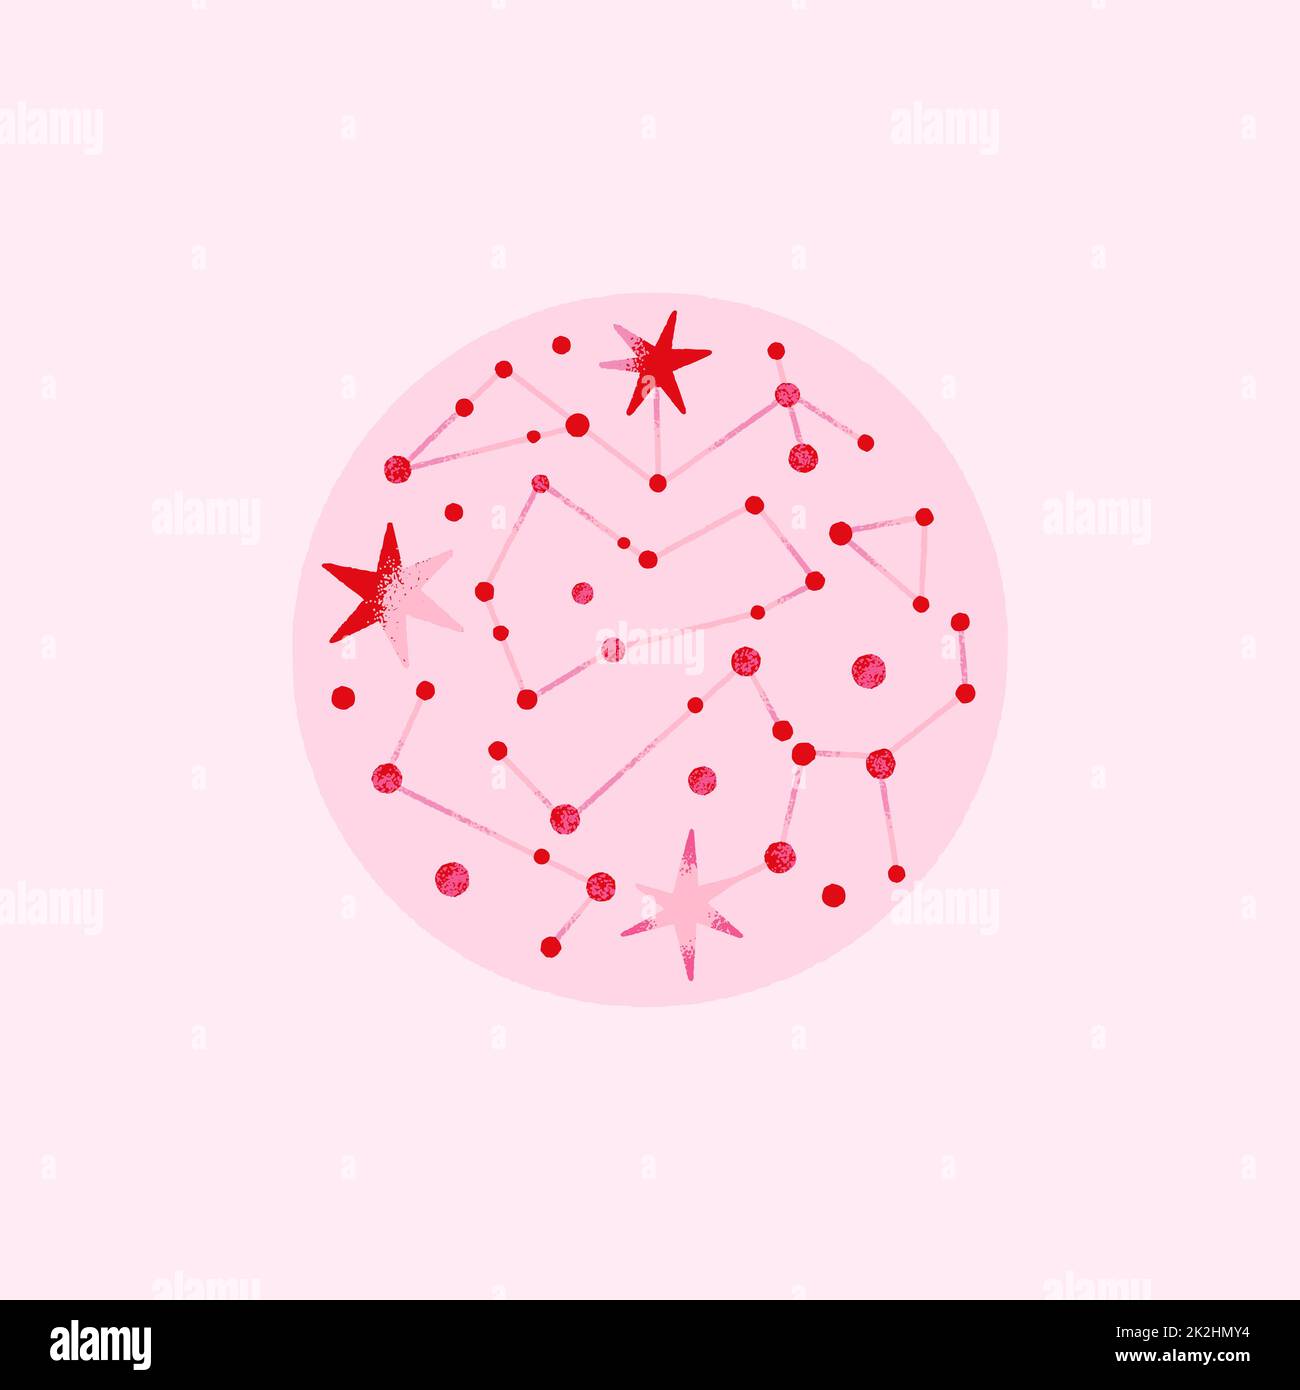 Composizione spaziale con pianeti e stelle di colore rosa, rosso. Illustrazione vettoriale sul tema dell'astrologia, dell'astronomia Foto Stock